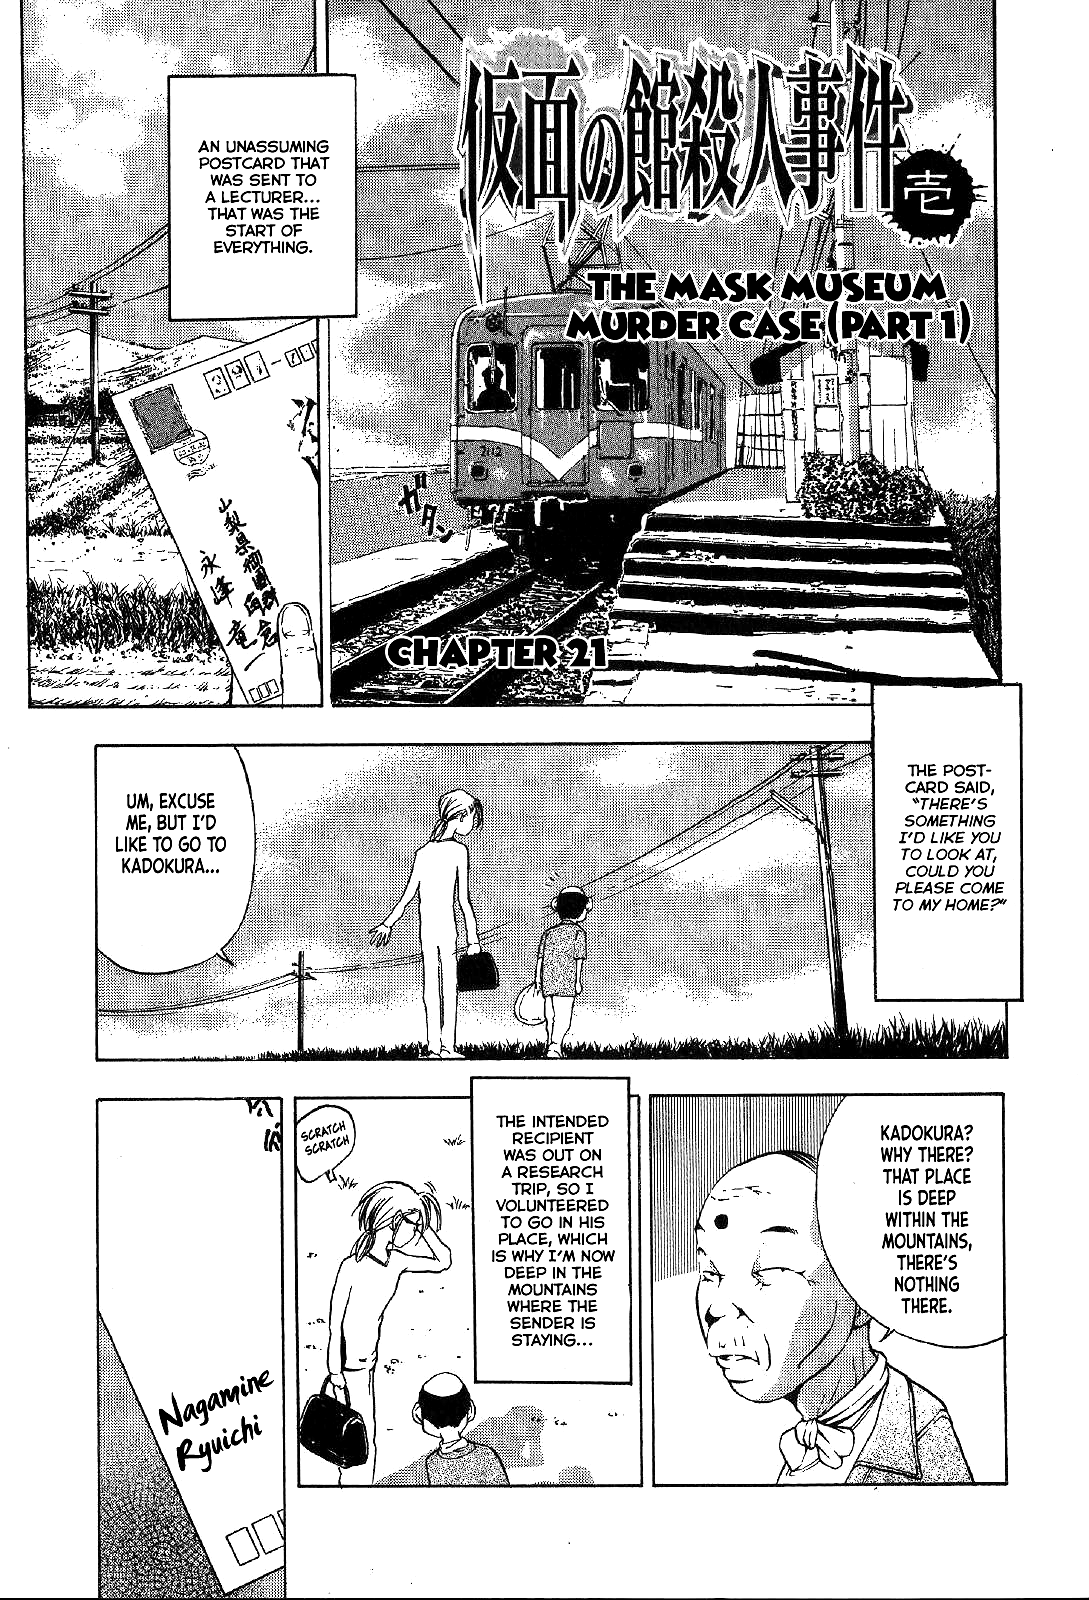 Mystery Minzoku Gakusha Yakumo Itsuki Vol.4 Chapter 21: Mask Museum Murder Case (Part 1) - Picture 3